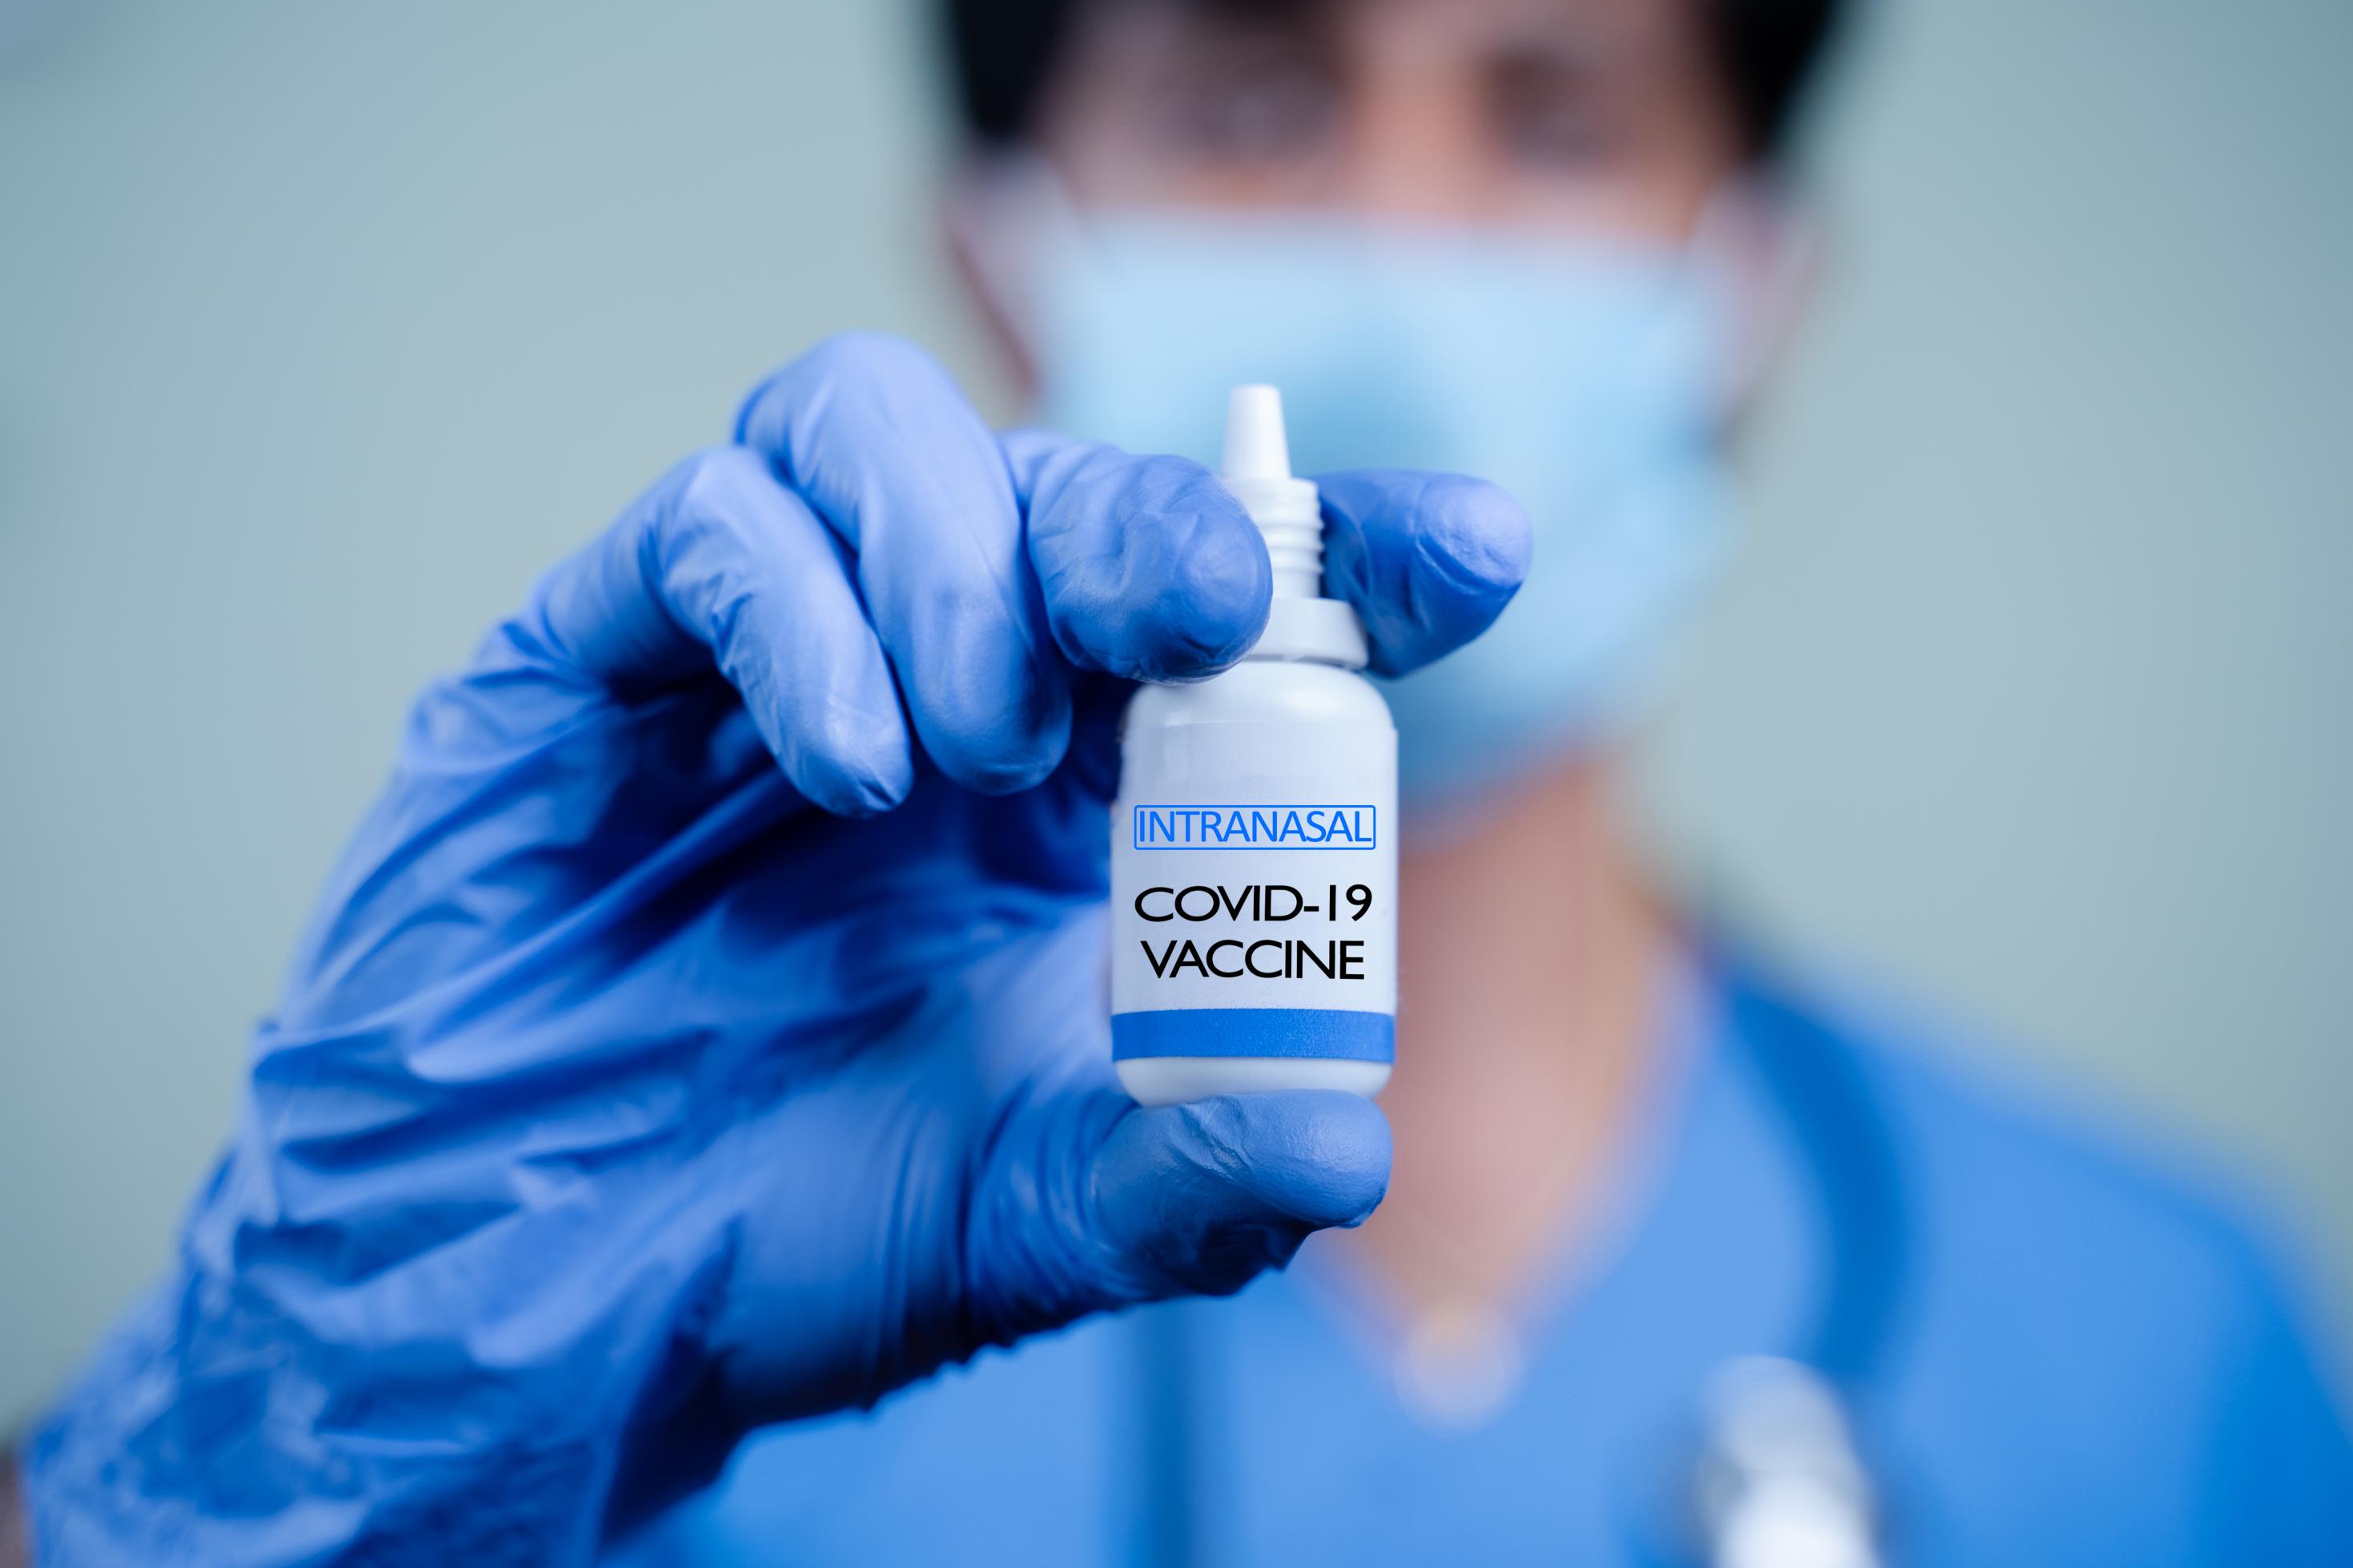 Eine Labormitarbeiter oder eine Labormitarbeiterin hält ein kleines Fläschchen in der Hand, in dem sich ein intranasaler Impfstoff gegen Covid-19 befindet.